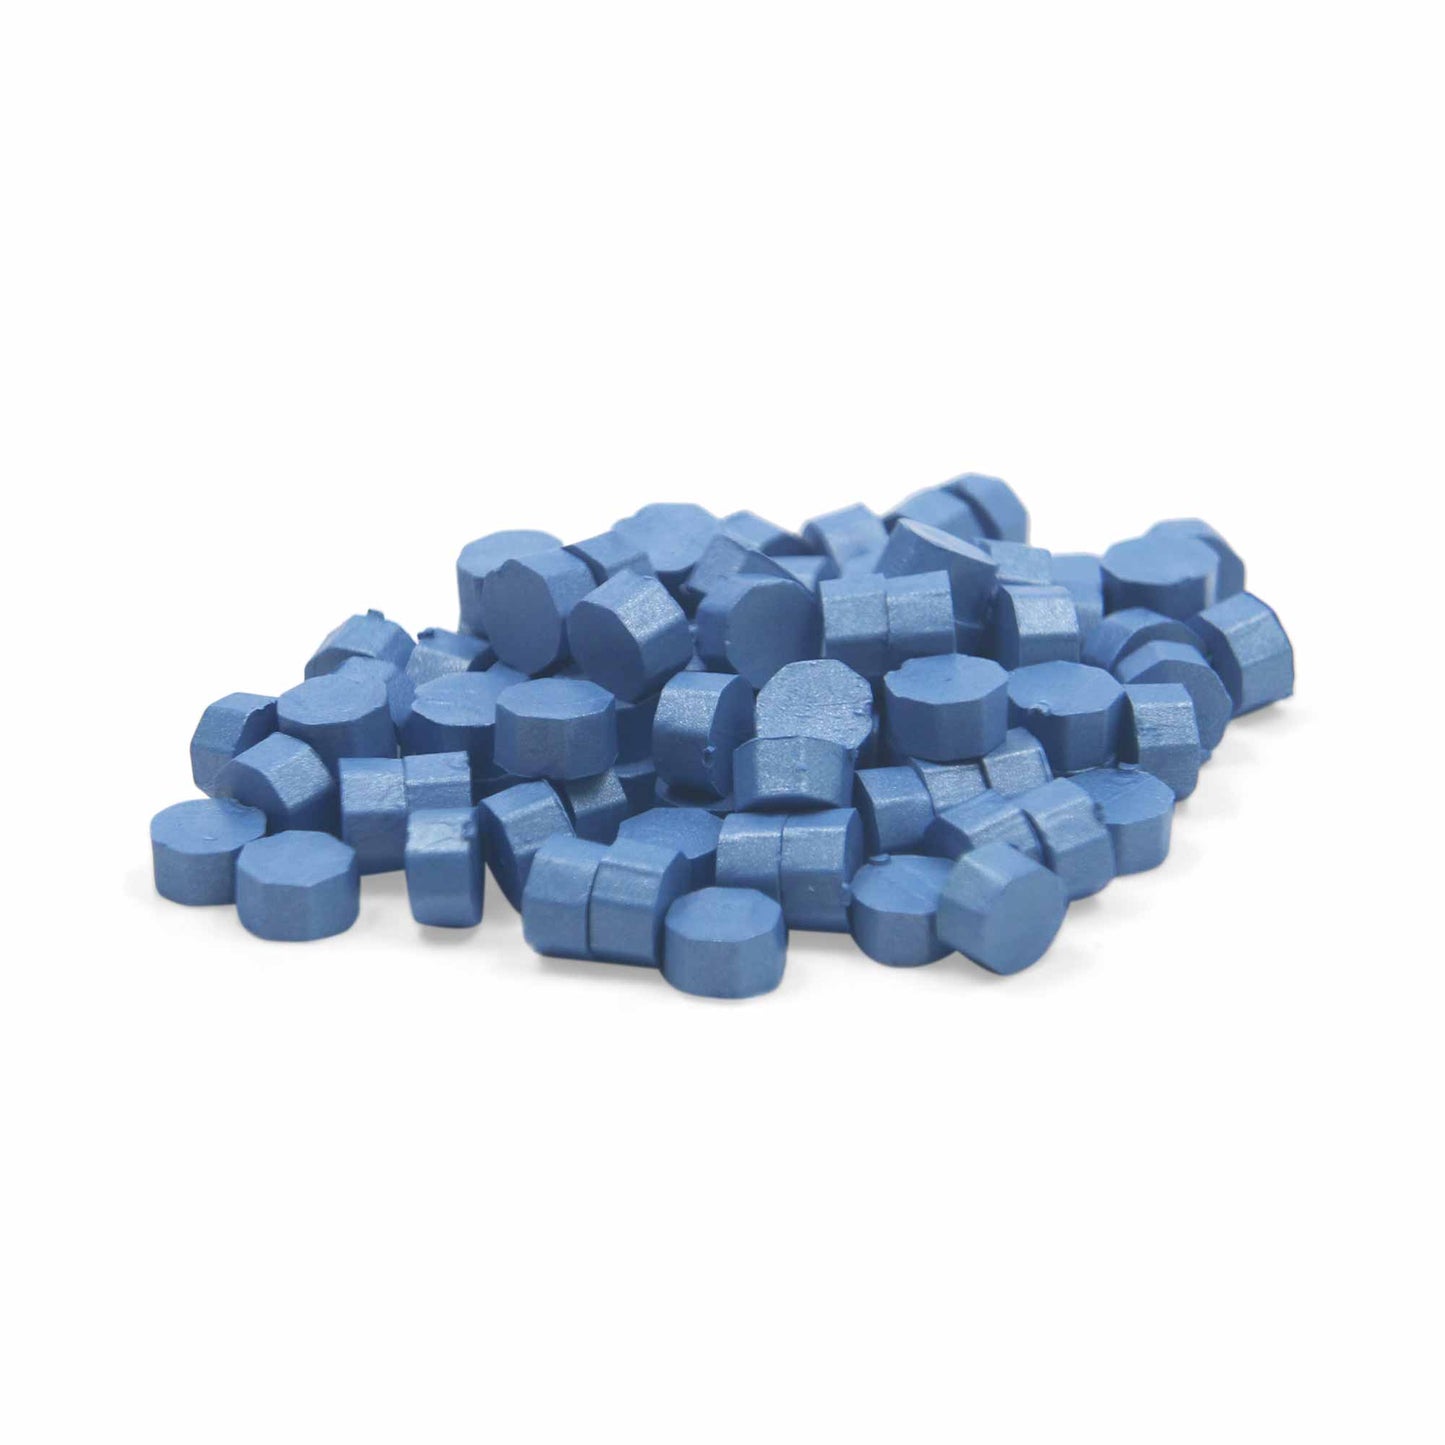 Cobalt Blue Wax Beads Bulk